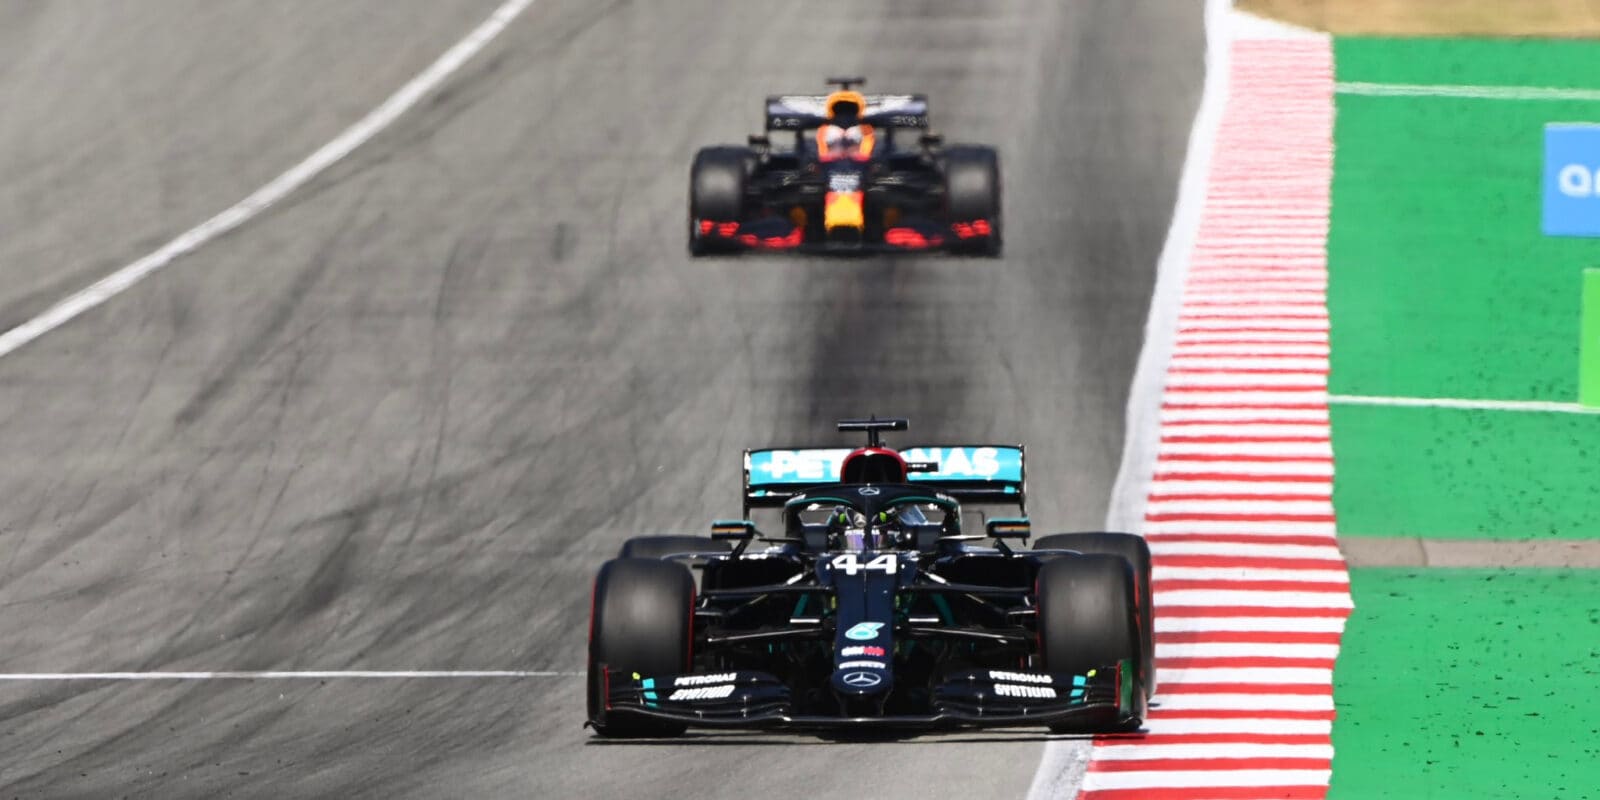 VC Španělska ovládl Lewis Hamilton, Leclerc odstoupil